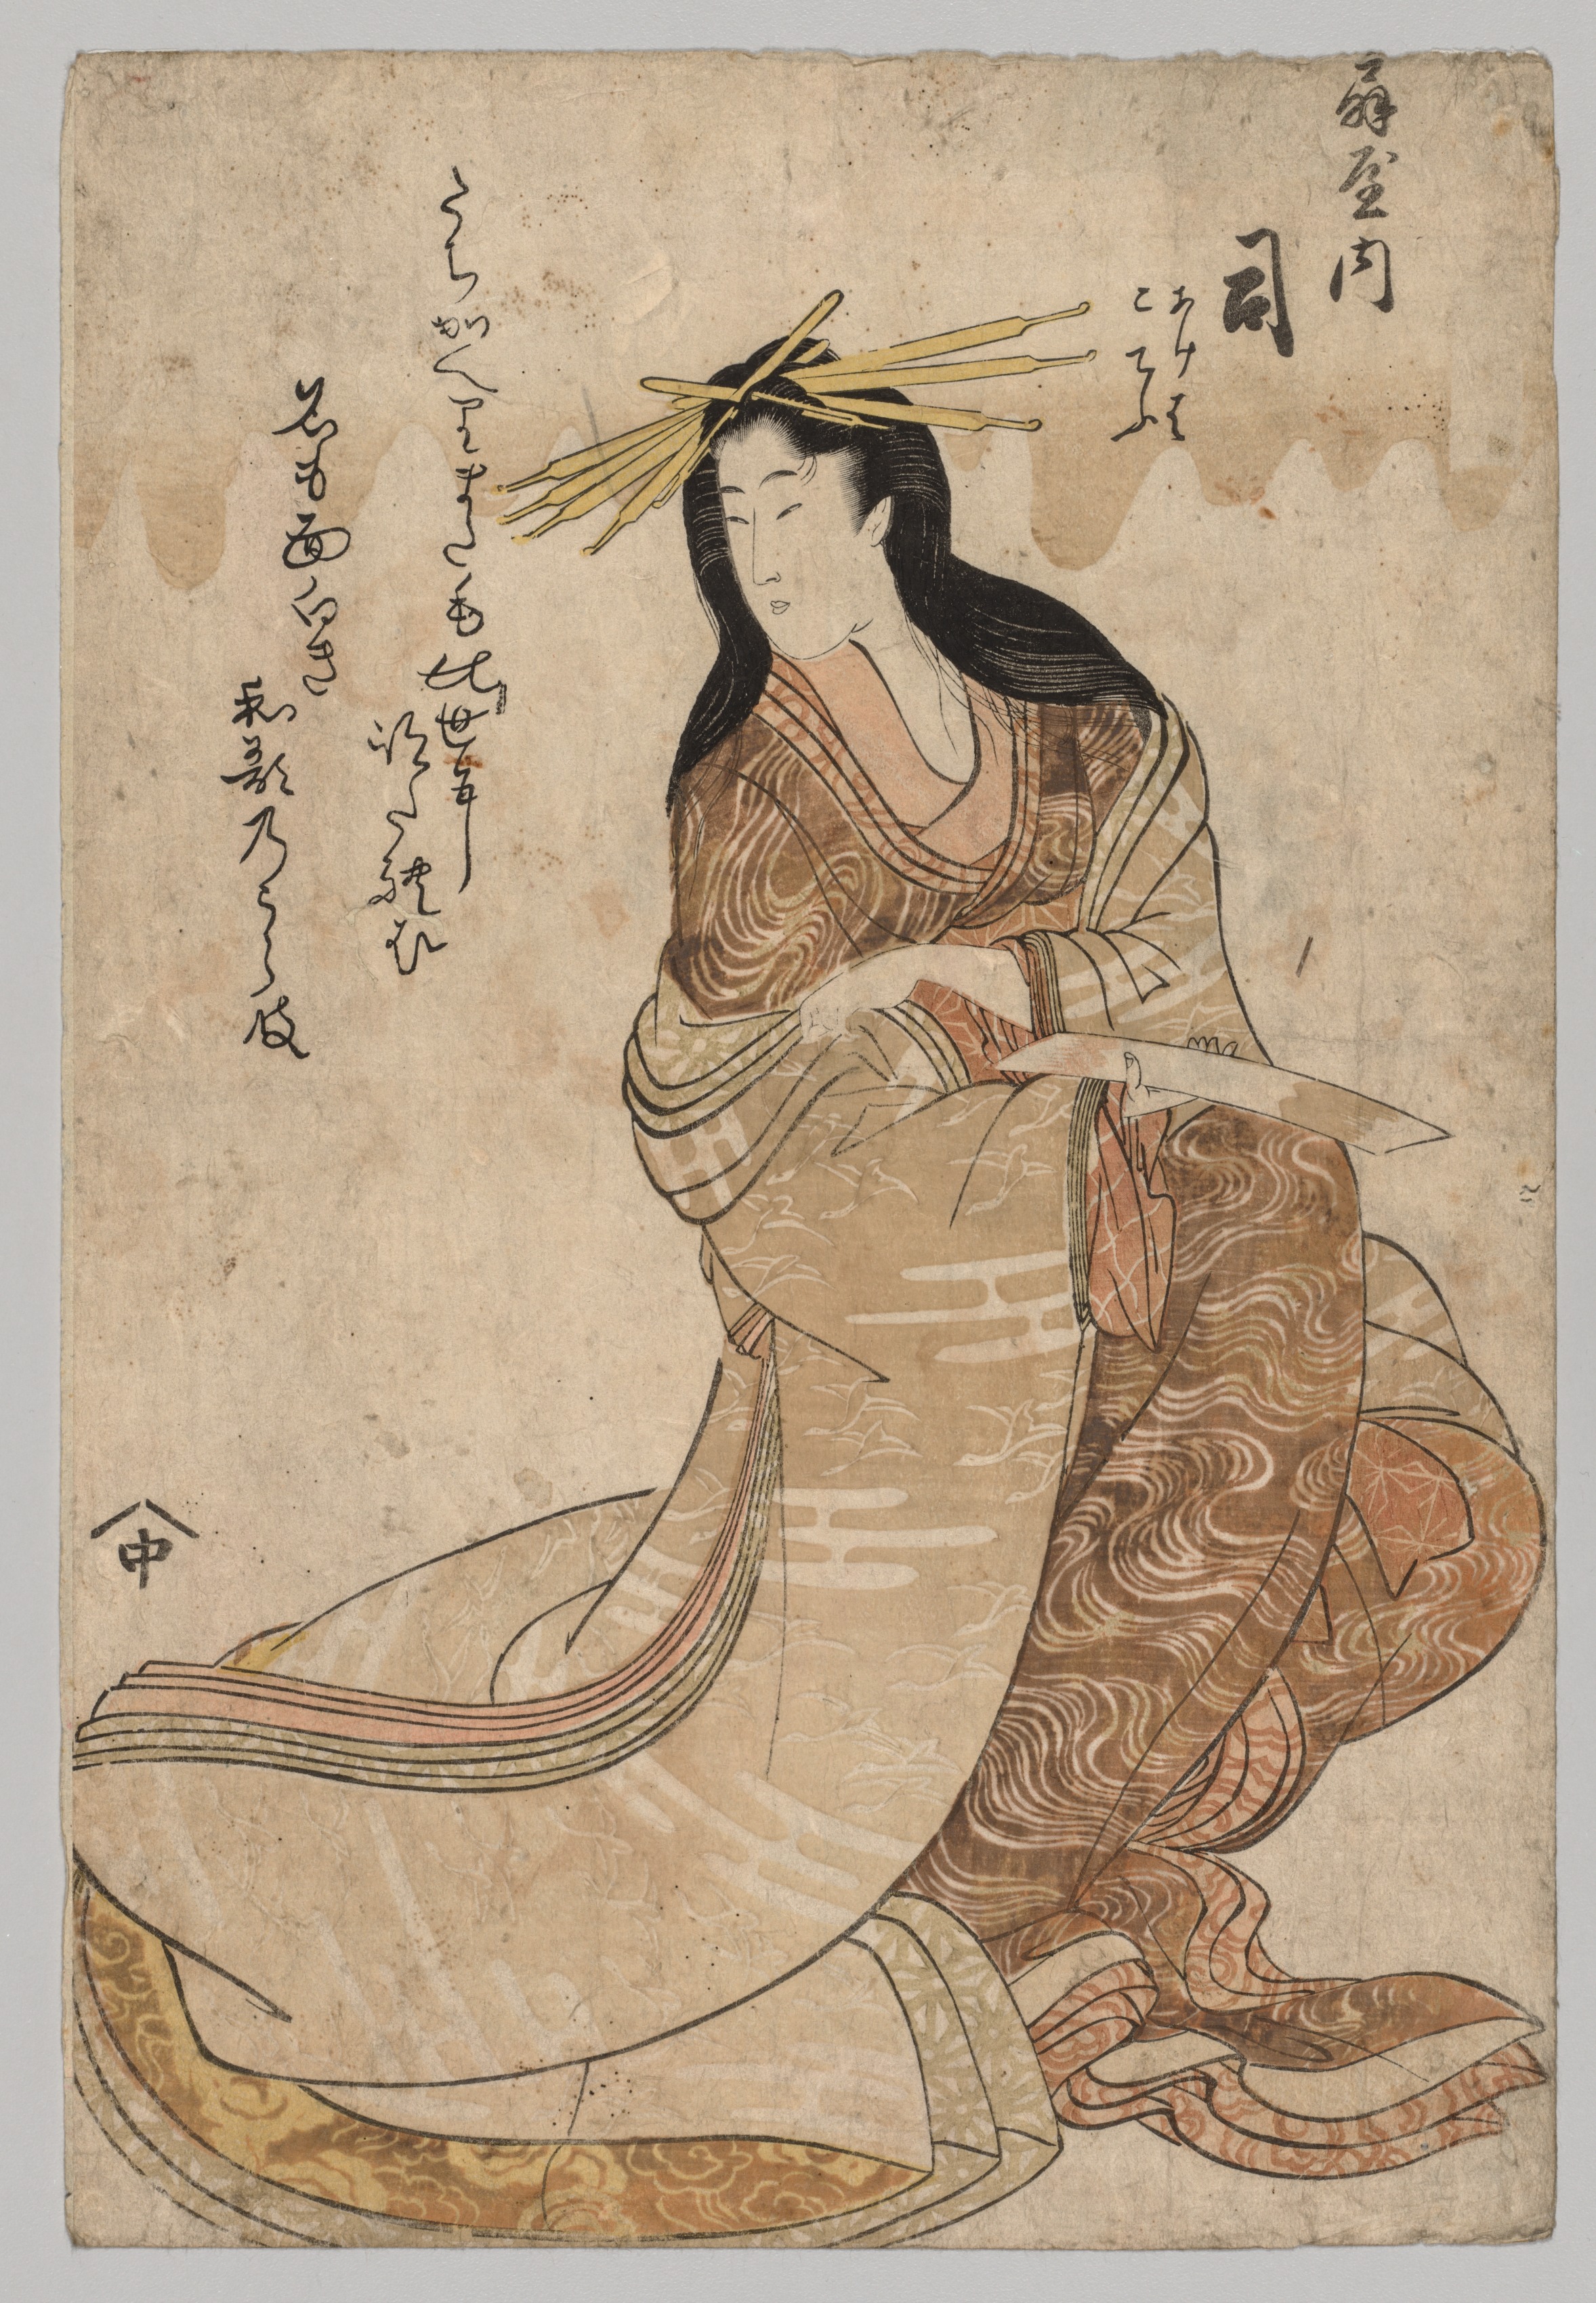 Tsubasa of Ōgiya